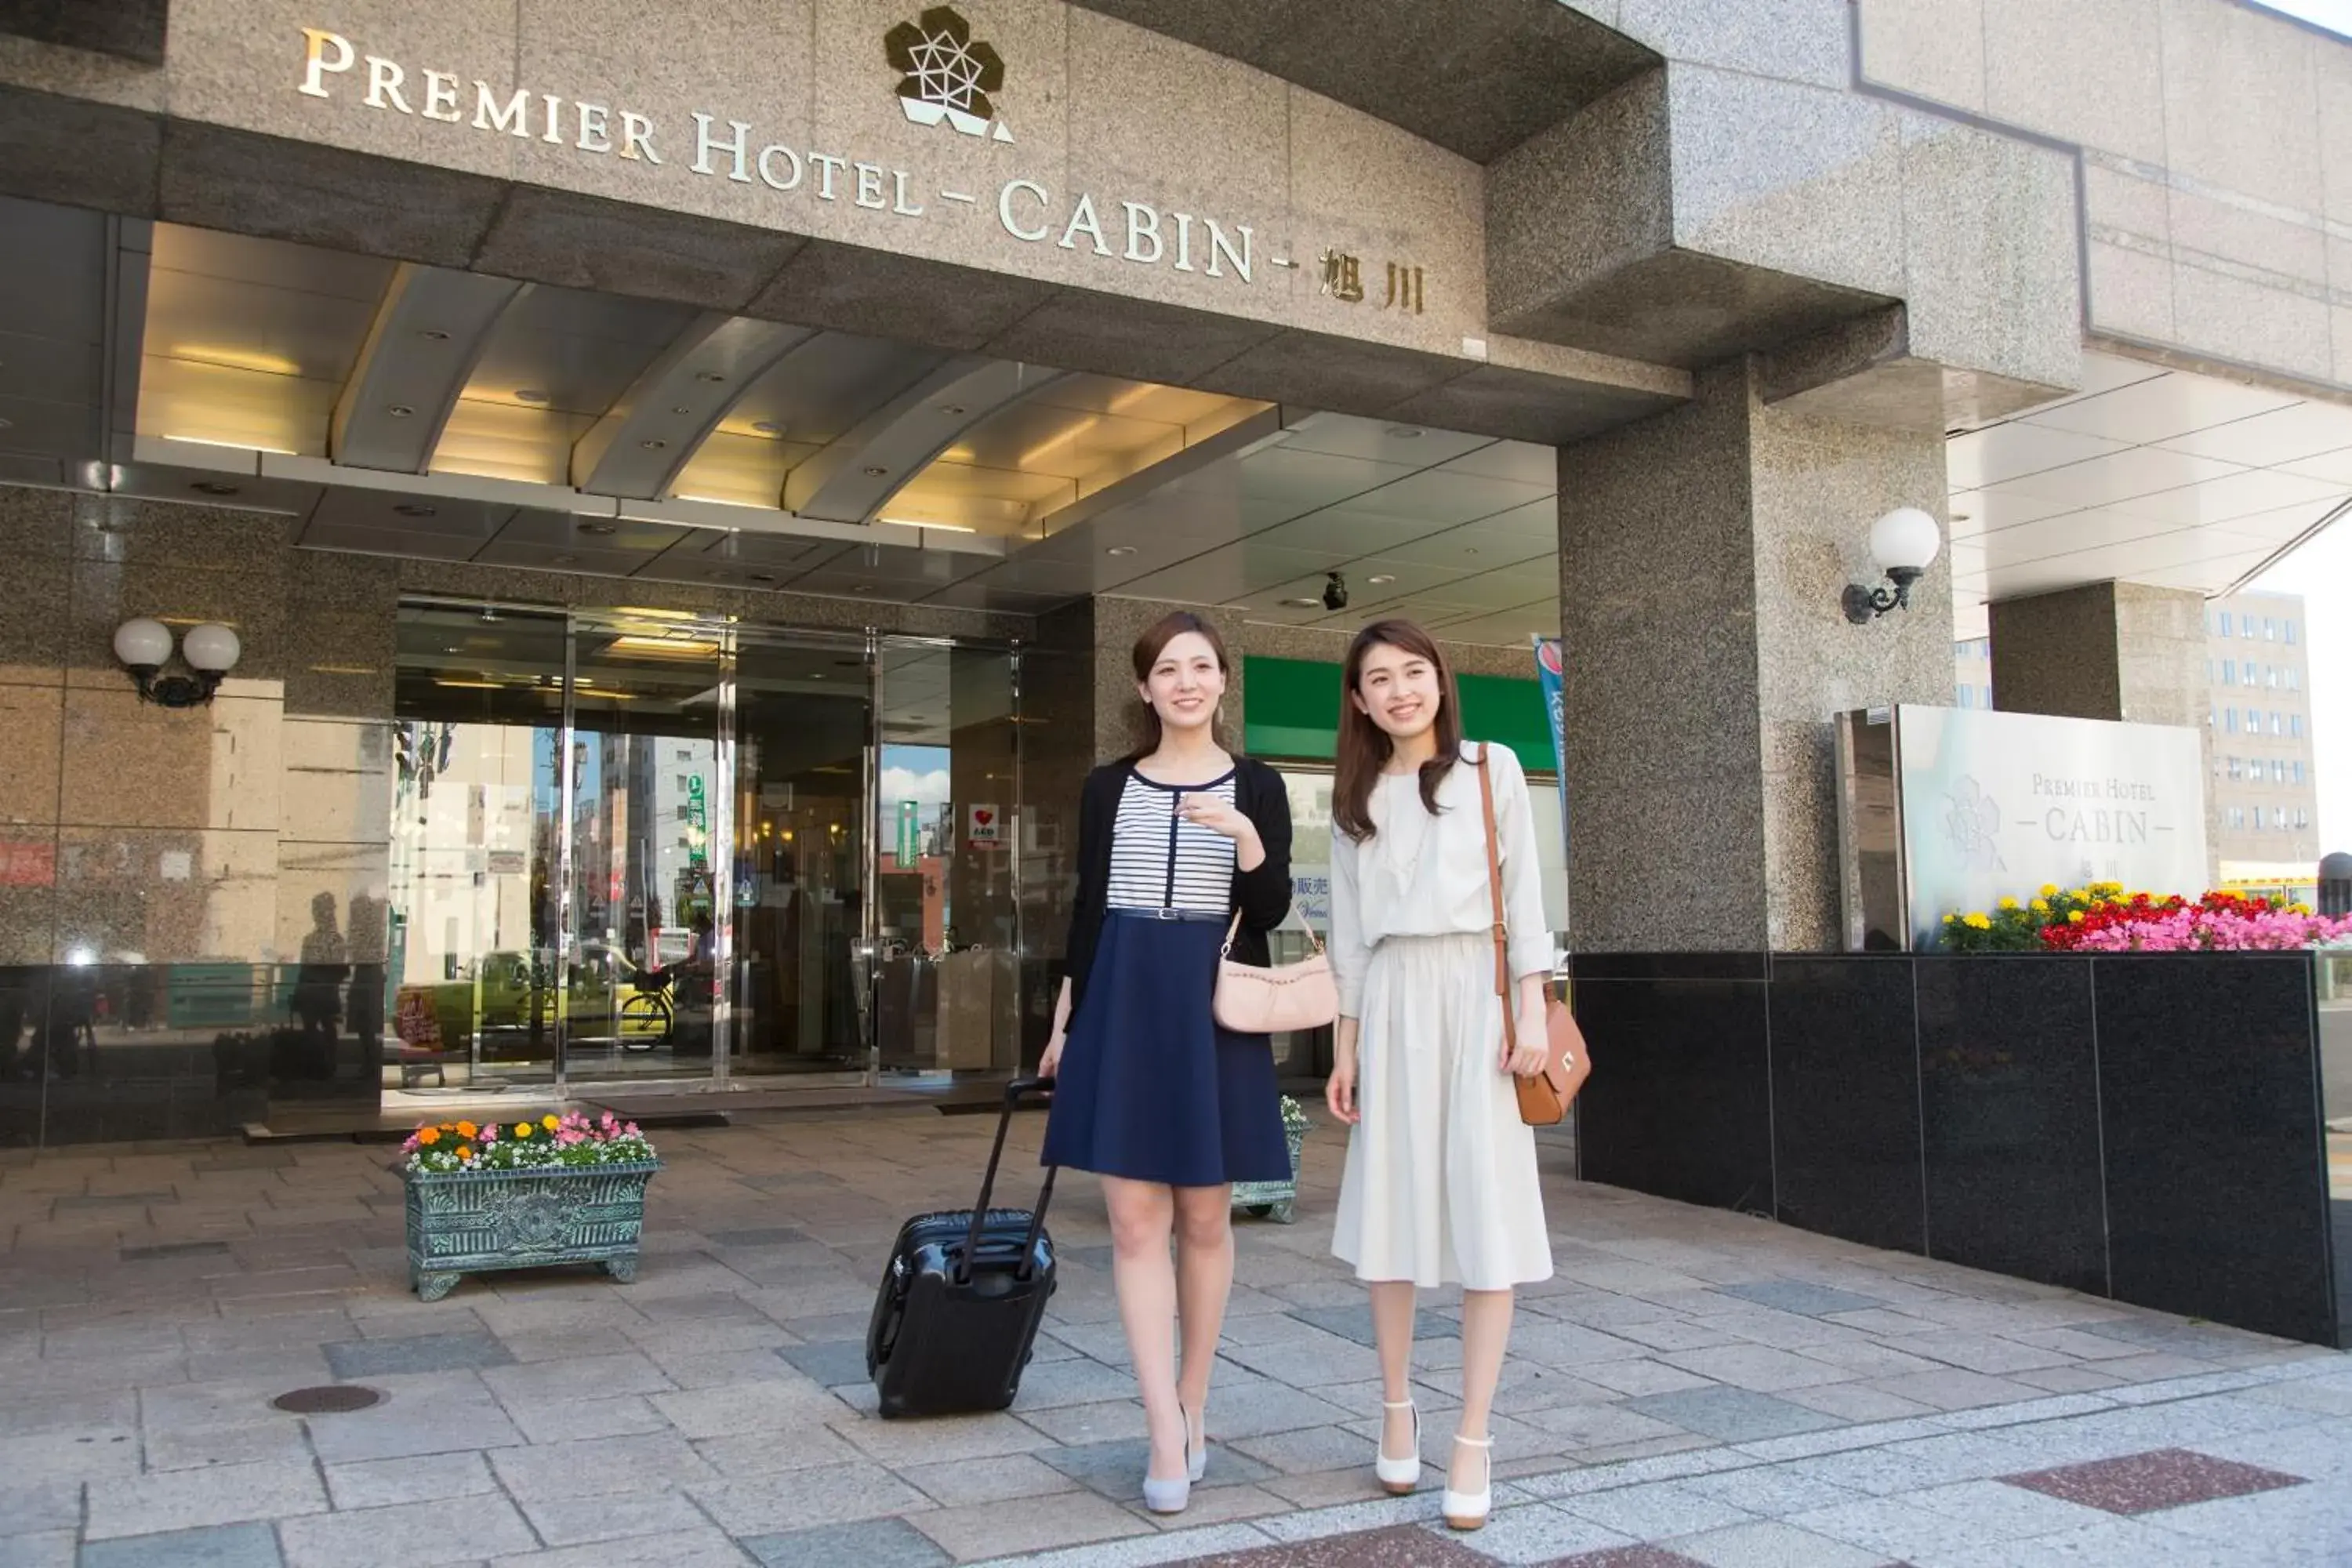 Facade/entrance in Premier Hotel -CABIN- Asahikawa